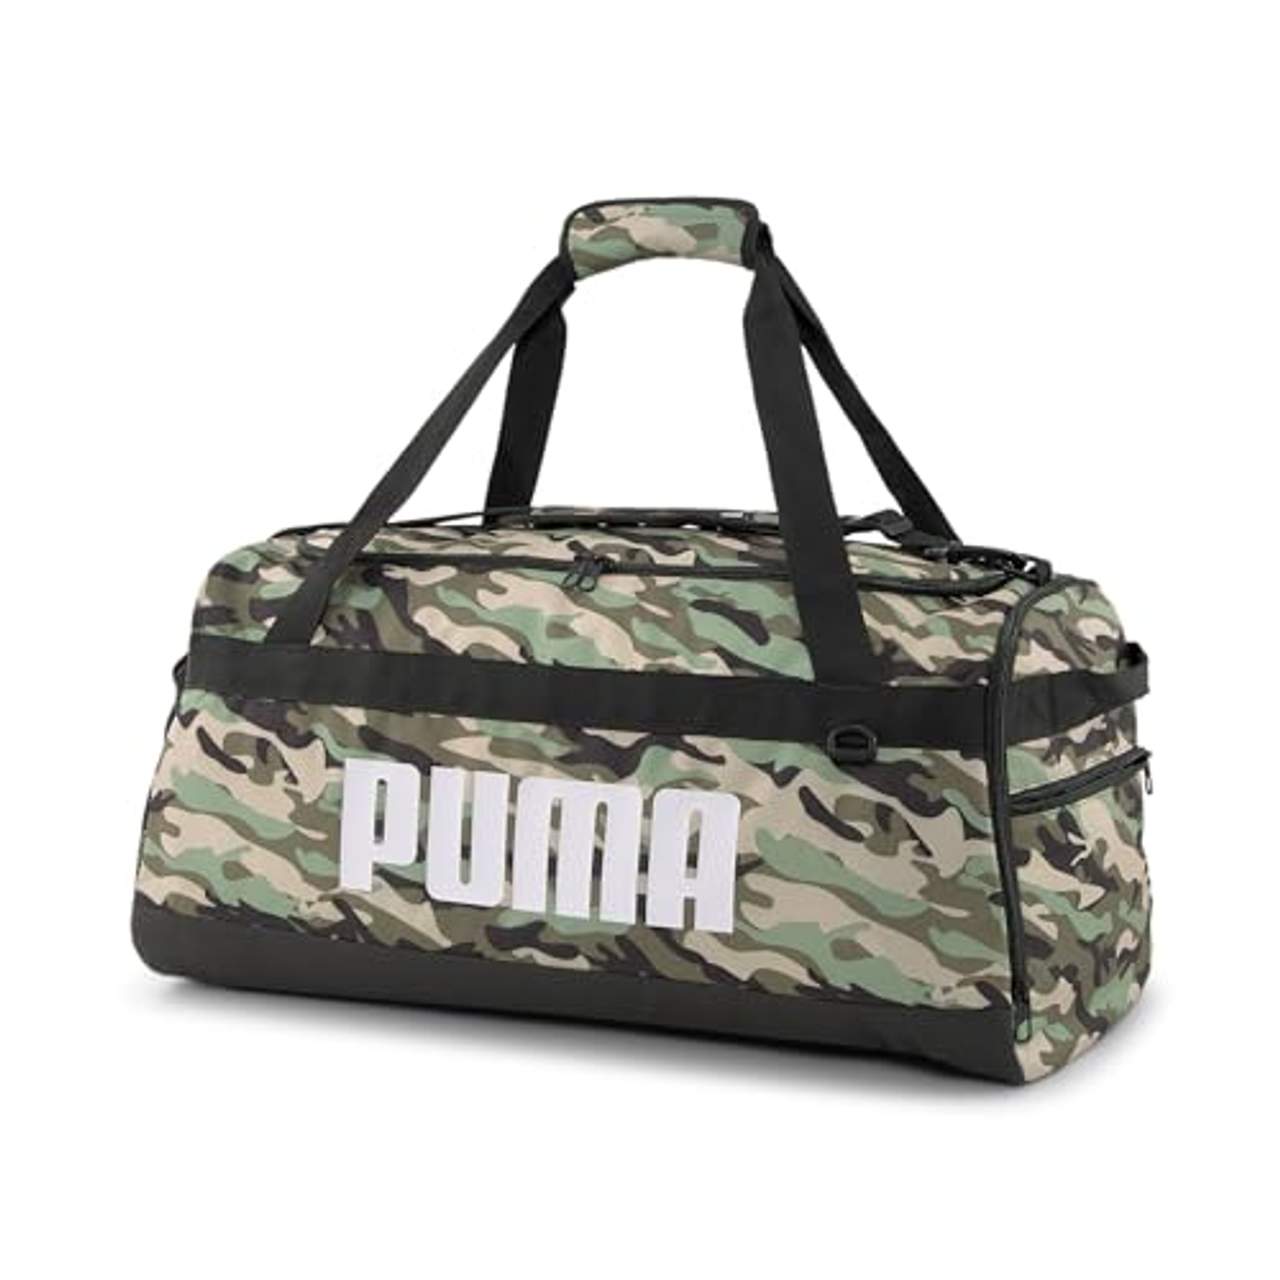 PUMA Challenger Duffel Bag M Sporttasche